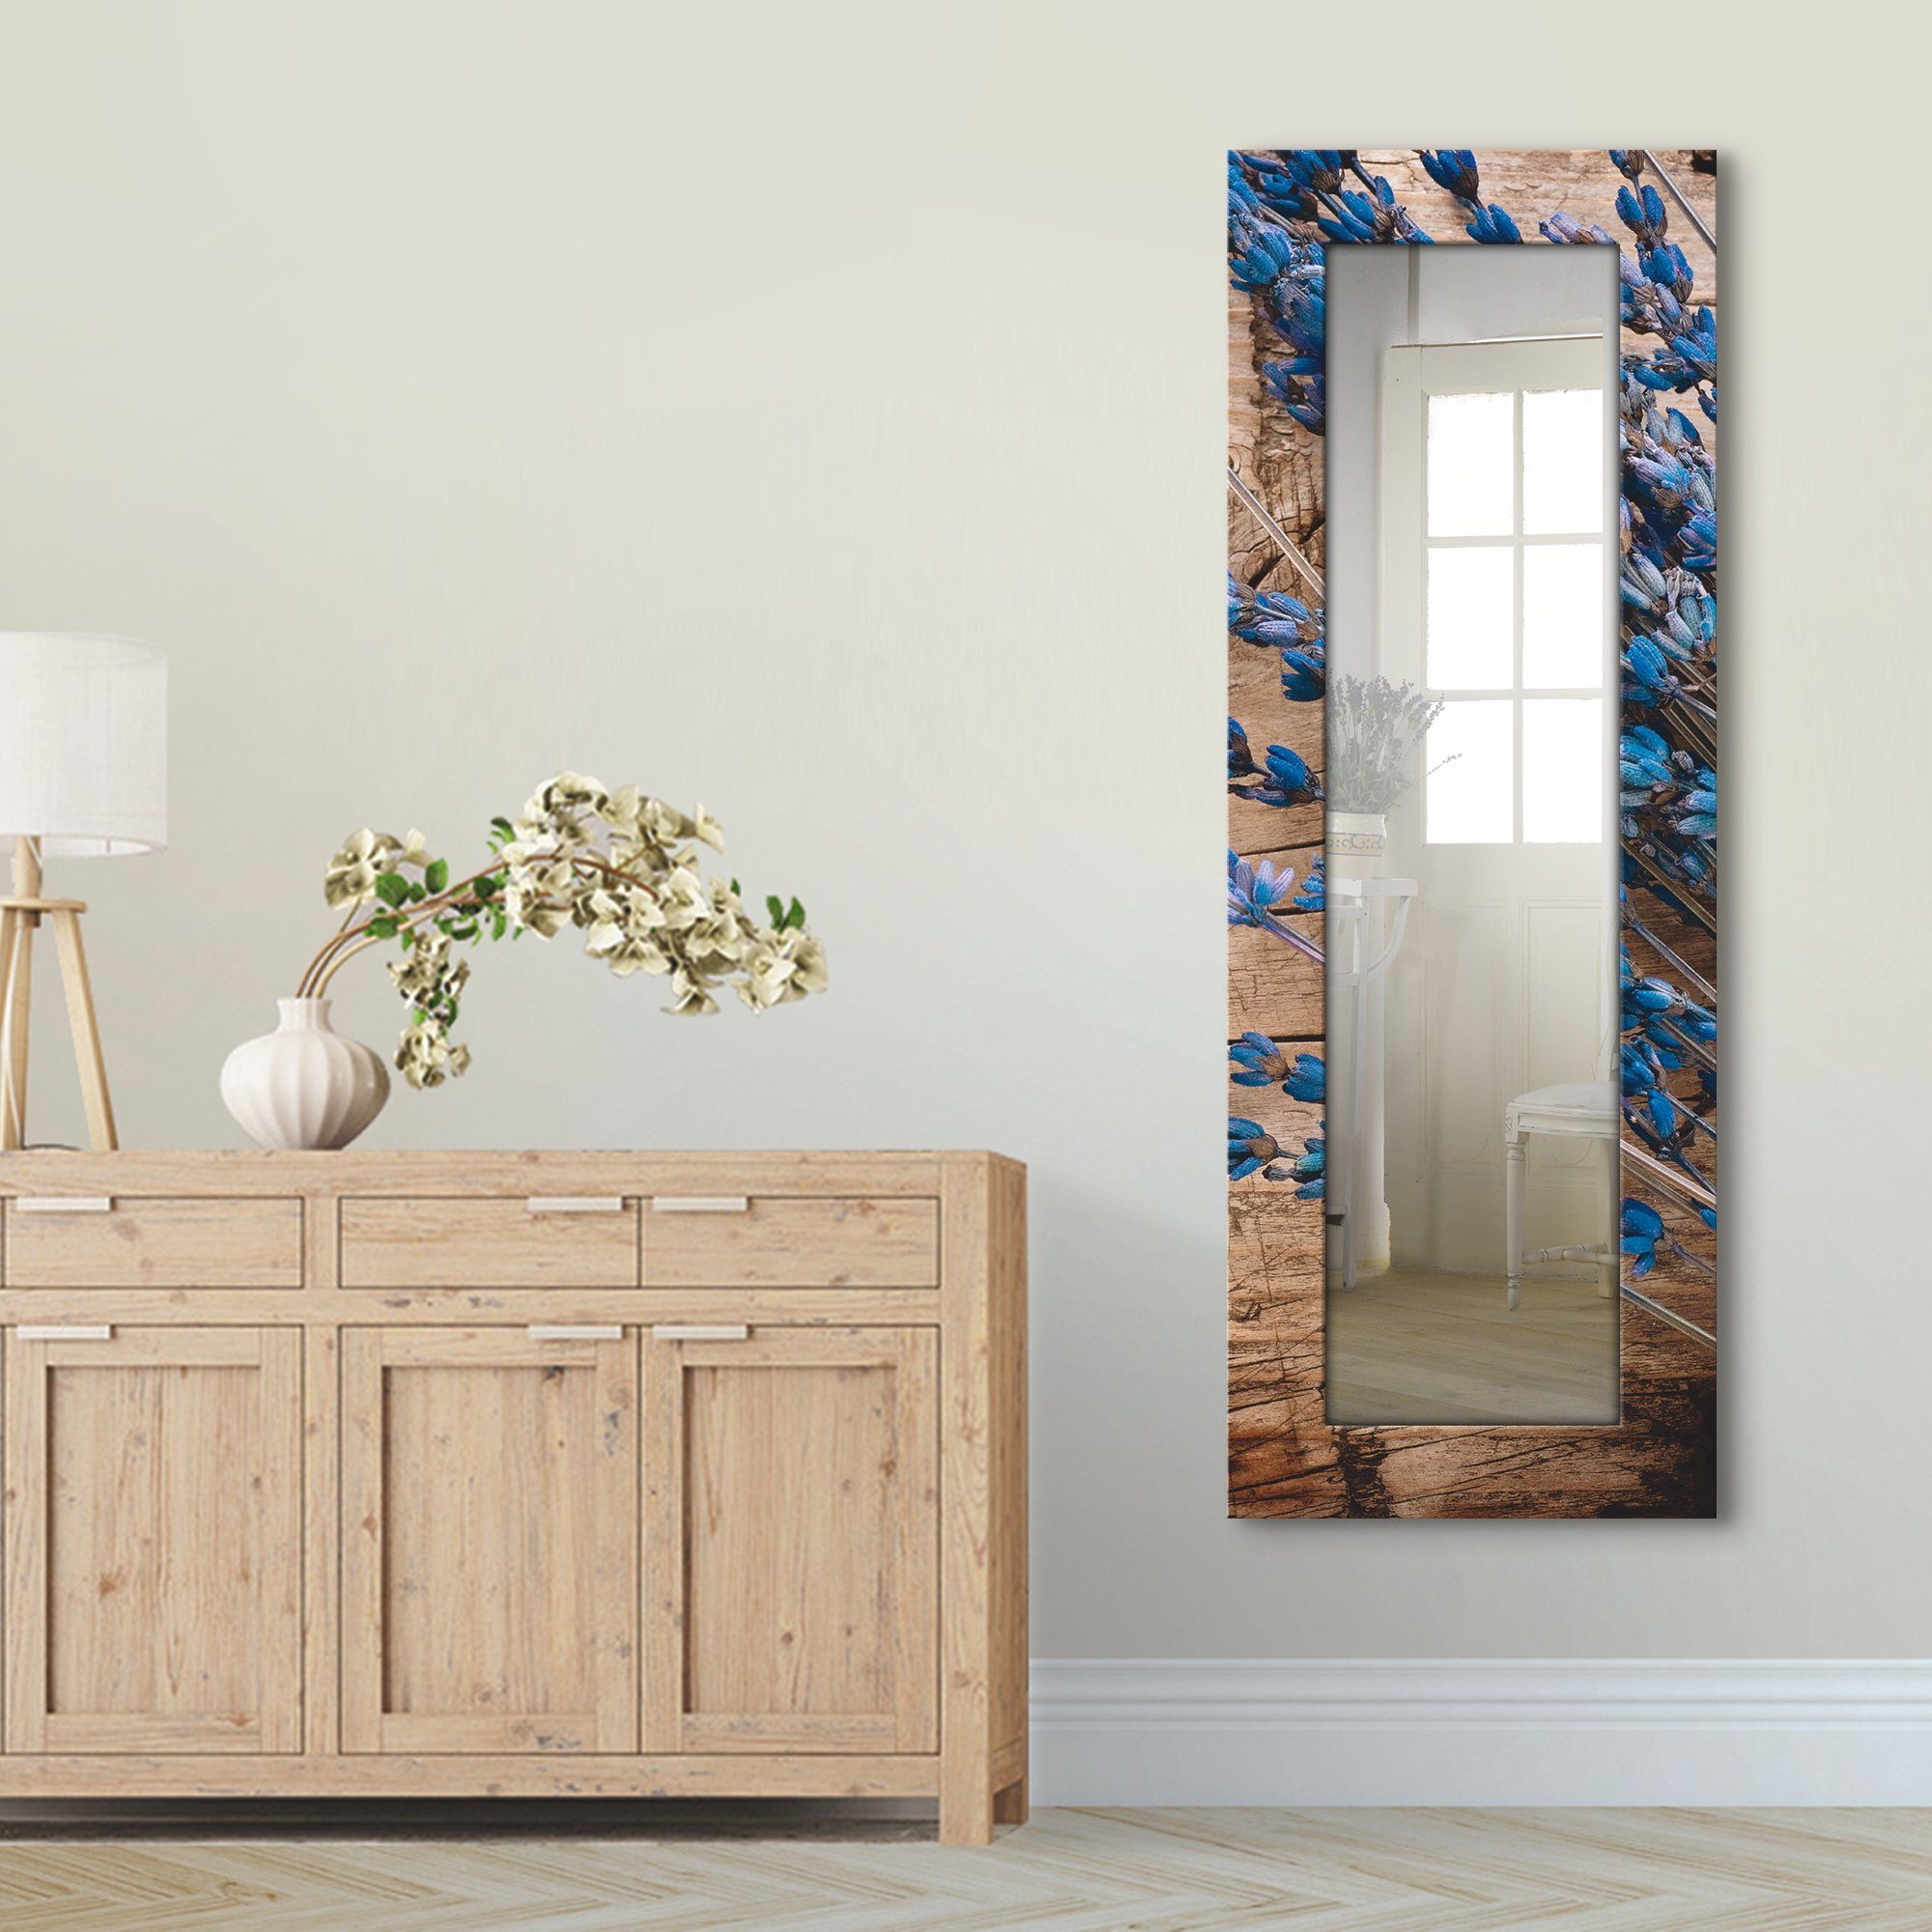 Artland Sierspiegel Lavendel tegen houten achtergrond ingelijste spiegel voor het hele lichaam met motiefrand, geschikt voor kleine, smalle hal, halspiegel, mirror spiegel omrand o